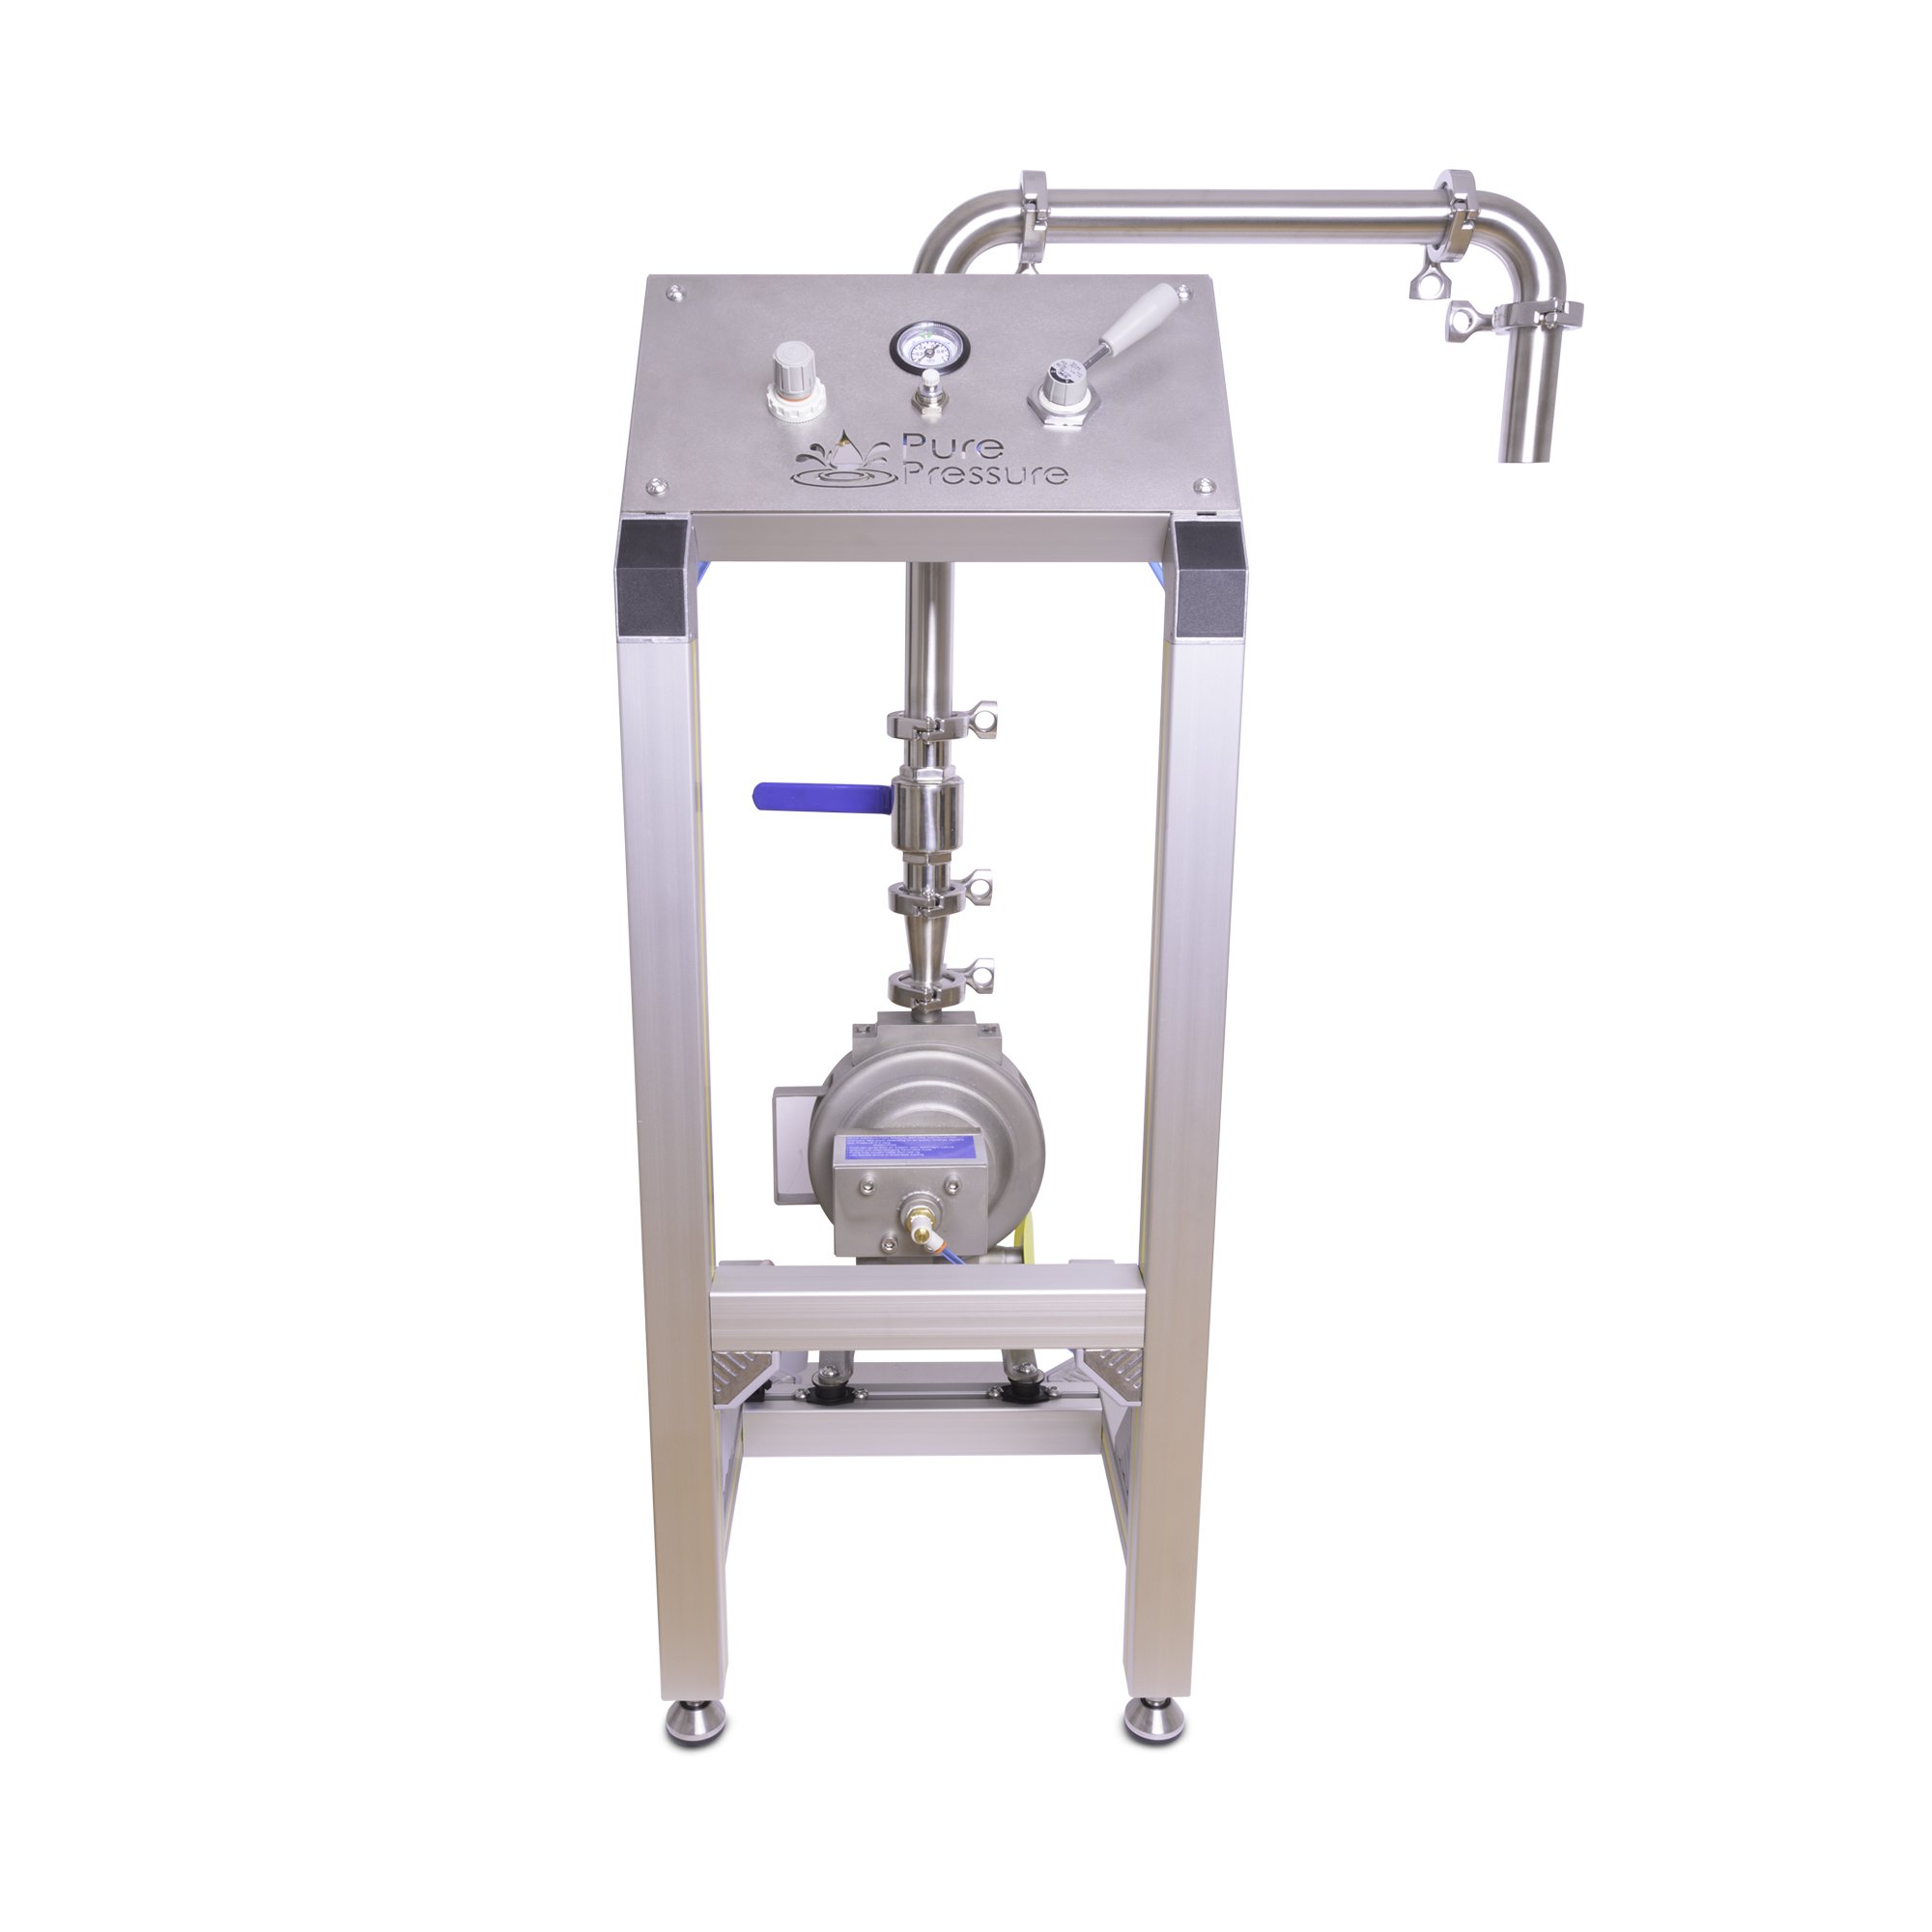 PurePressure Pneumatic Hash Pump – Scientific Solutions